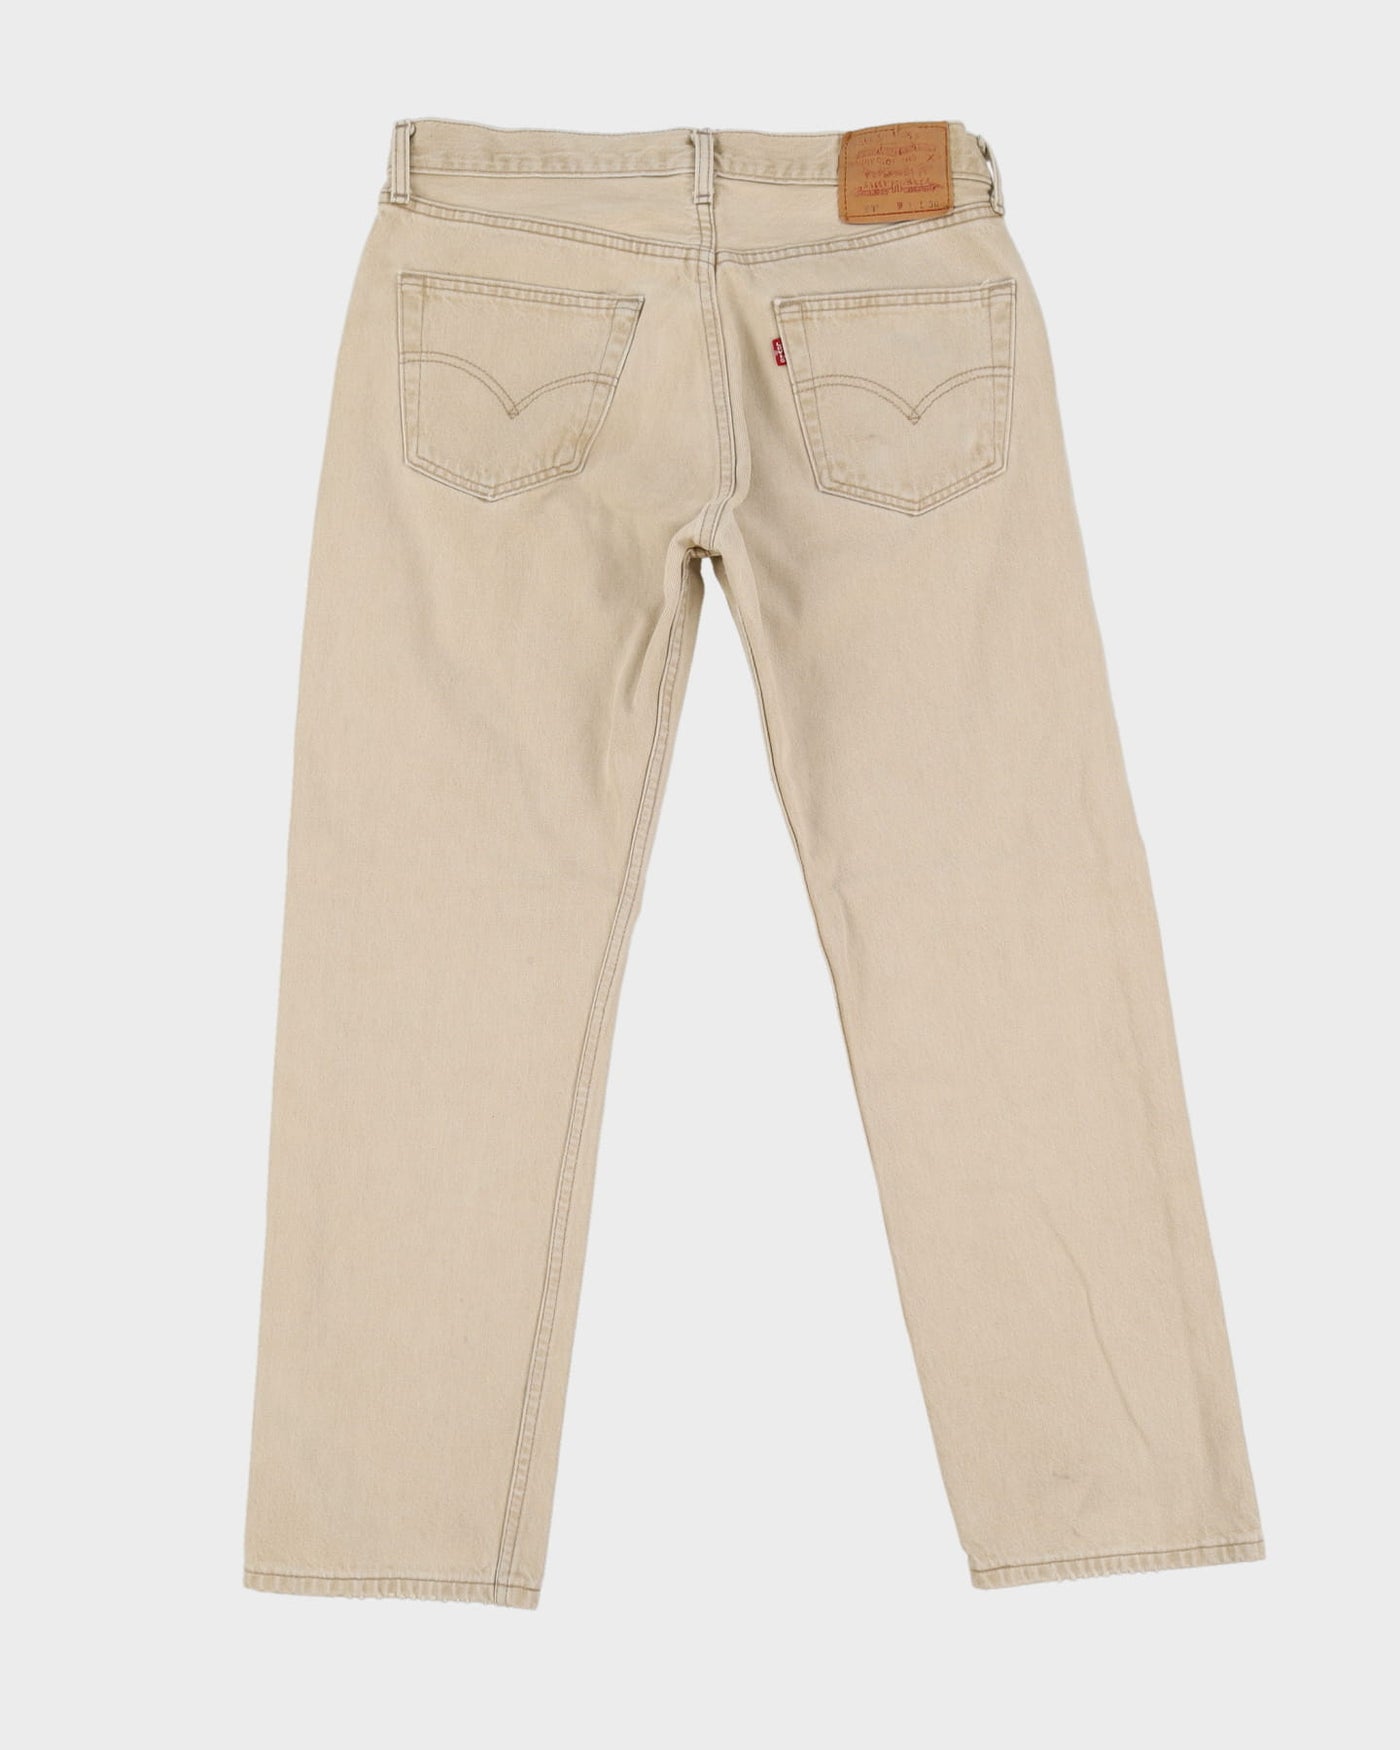 Vintage 90s Levi's 501 Beige Jeans - W34 L30